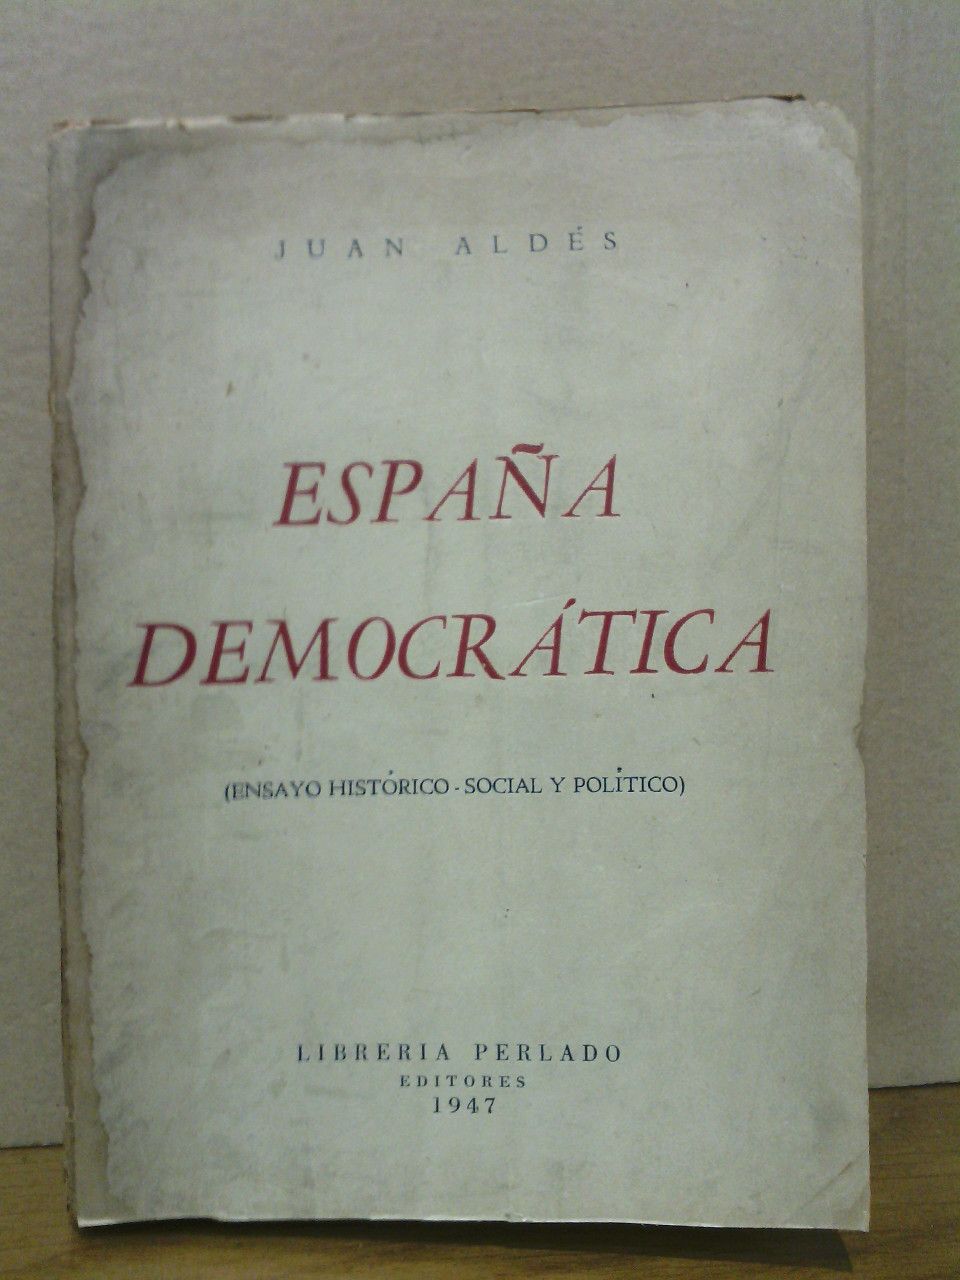 ALDES, Juan - Espaa democrtica: Ensayo histrico-social y poltico